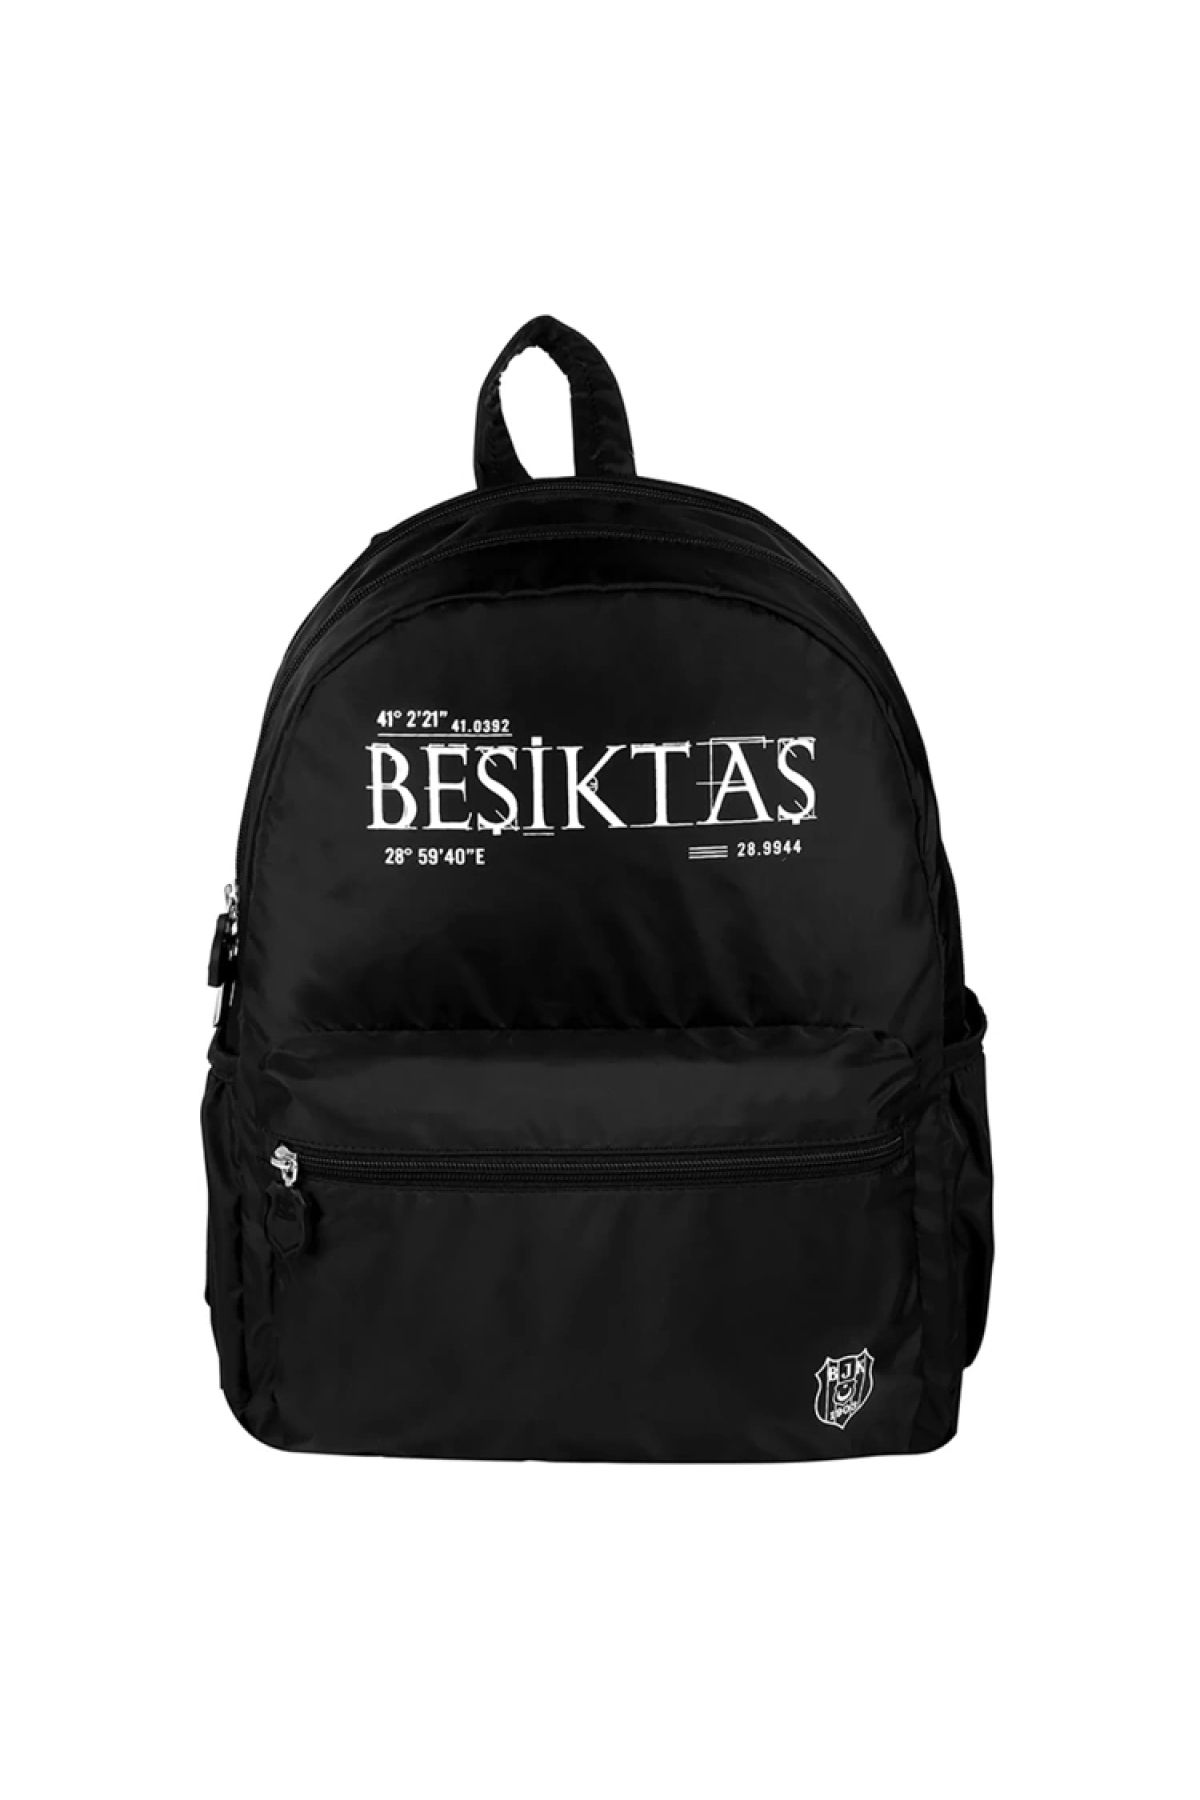 Beşiktaş Me 24335 1903 Sılver Logo Sırt Çantası Siyah